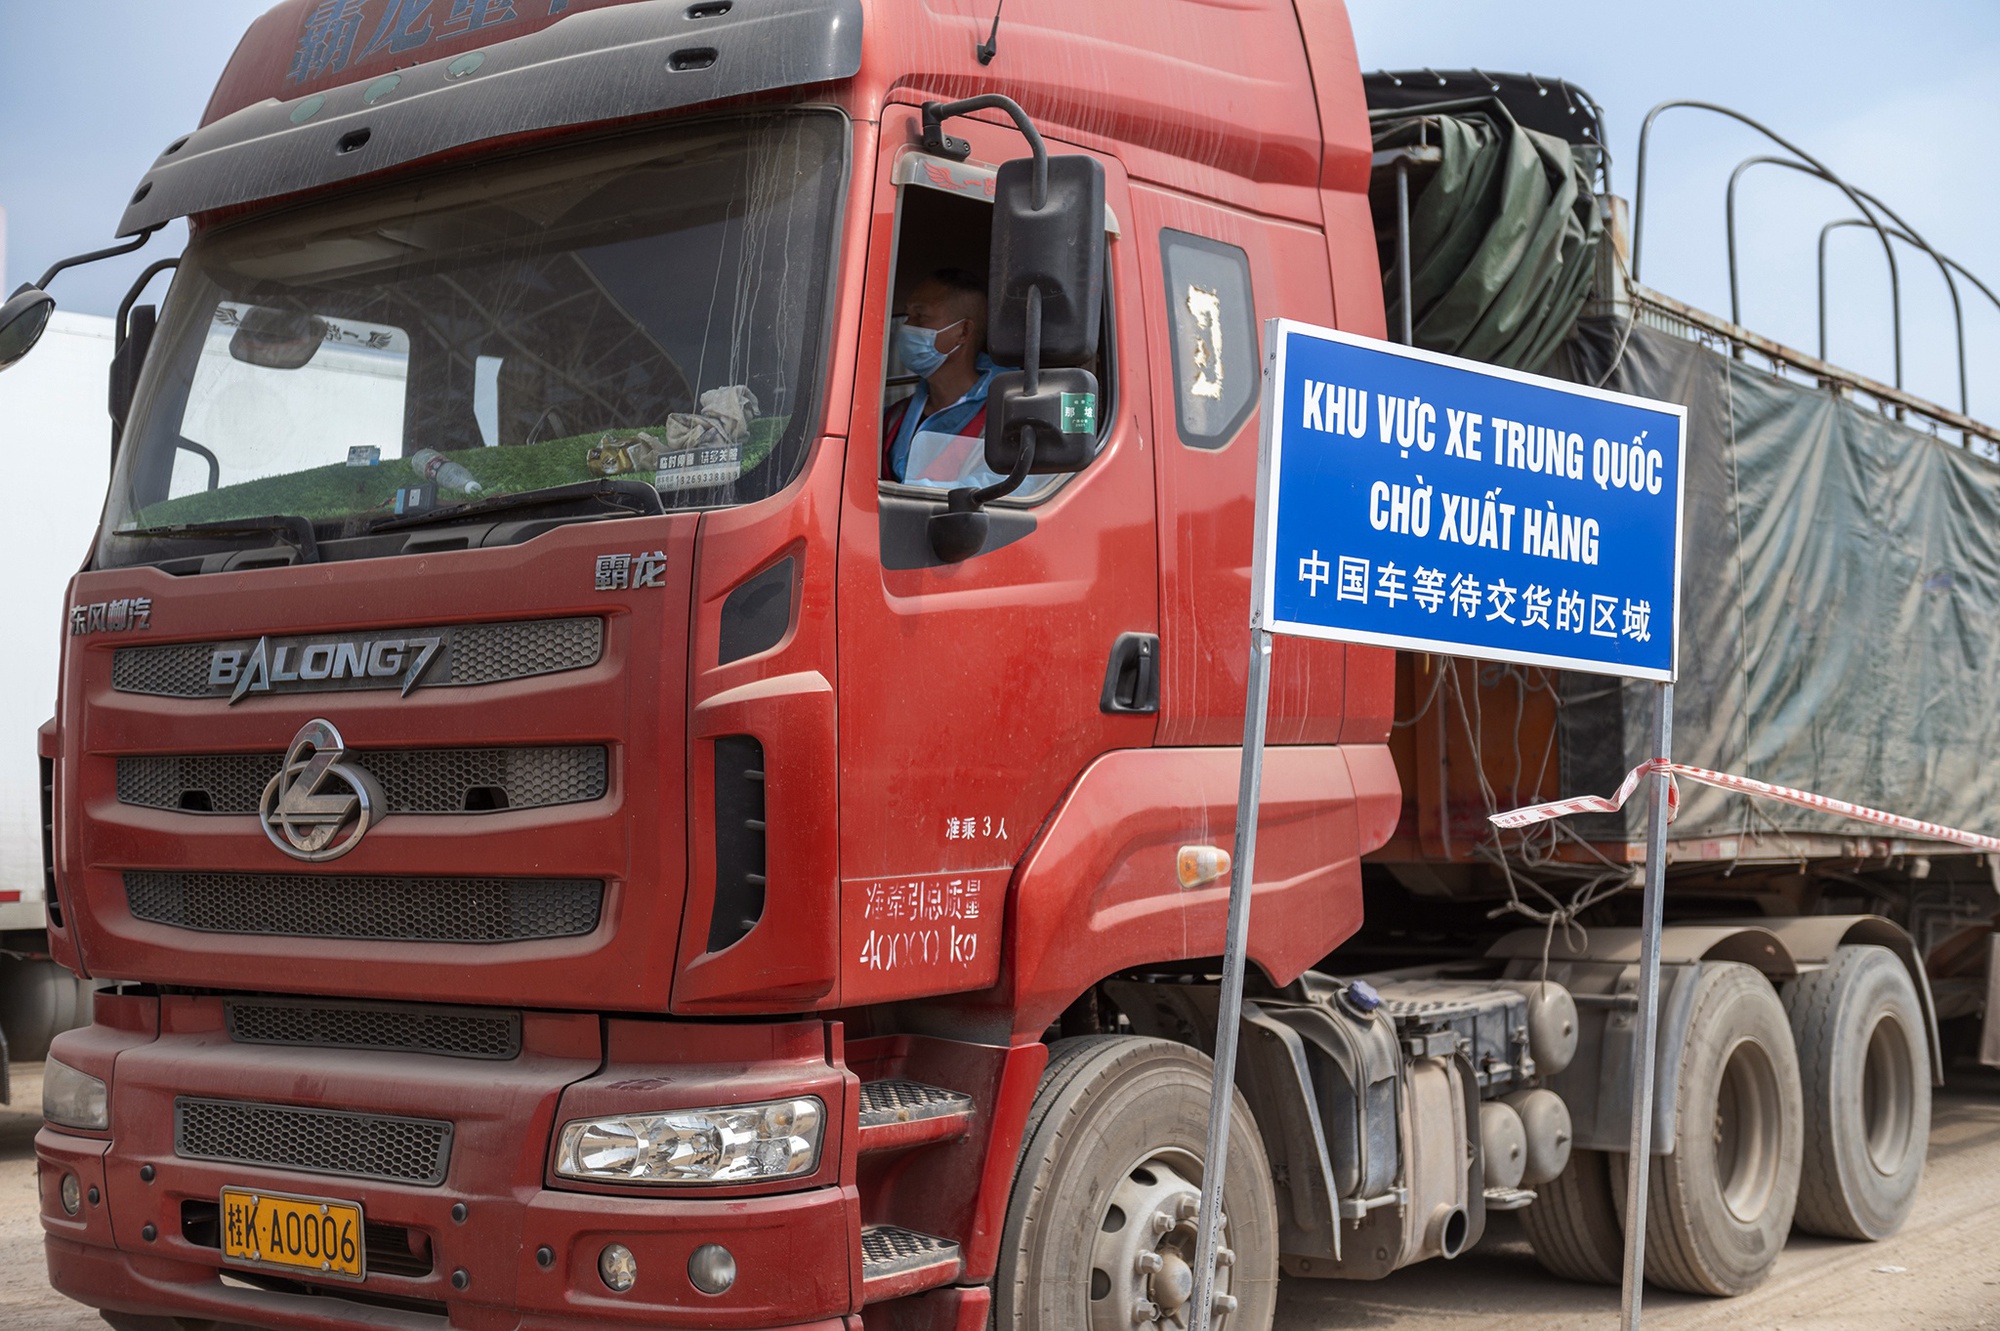 Thêm một cửa khẩu ở Quảng Ninh thông quan sau 3 năm tạm dừng do COVID1-19 - Ảnh 1.